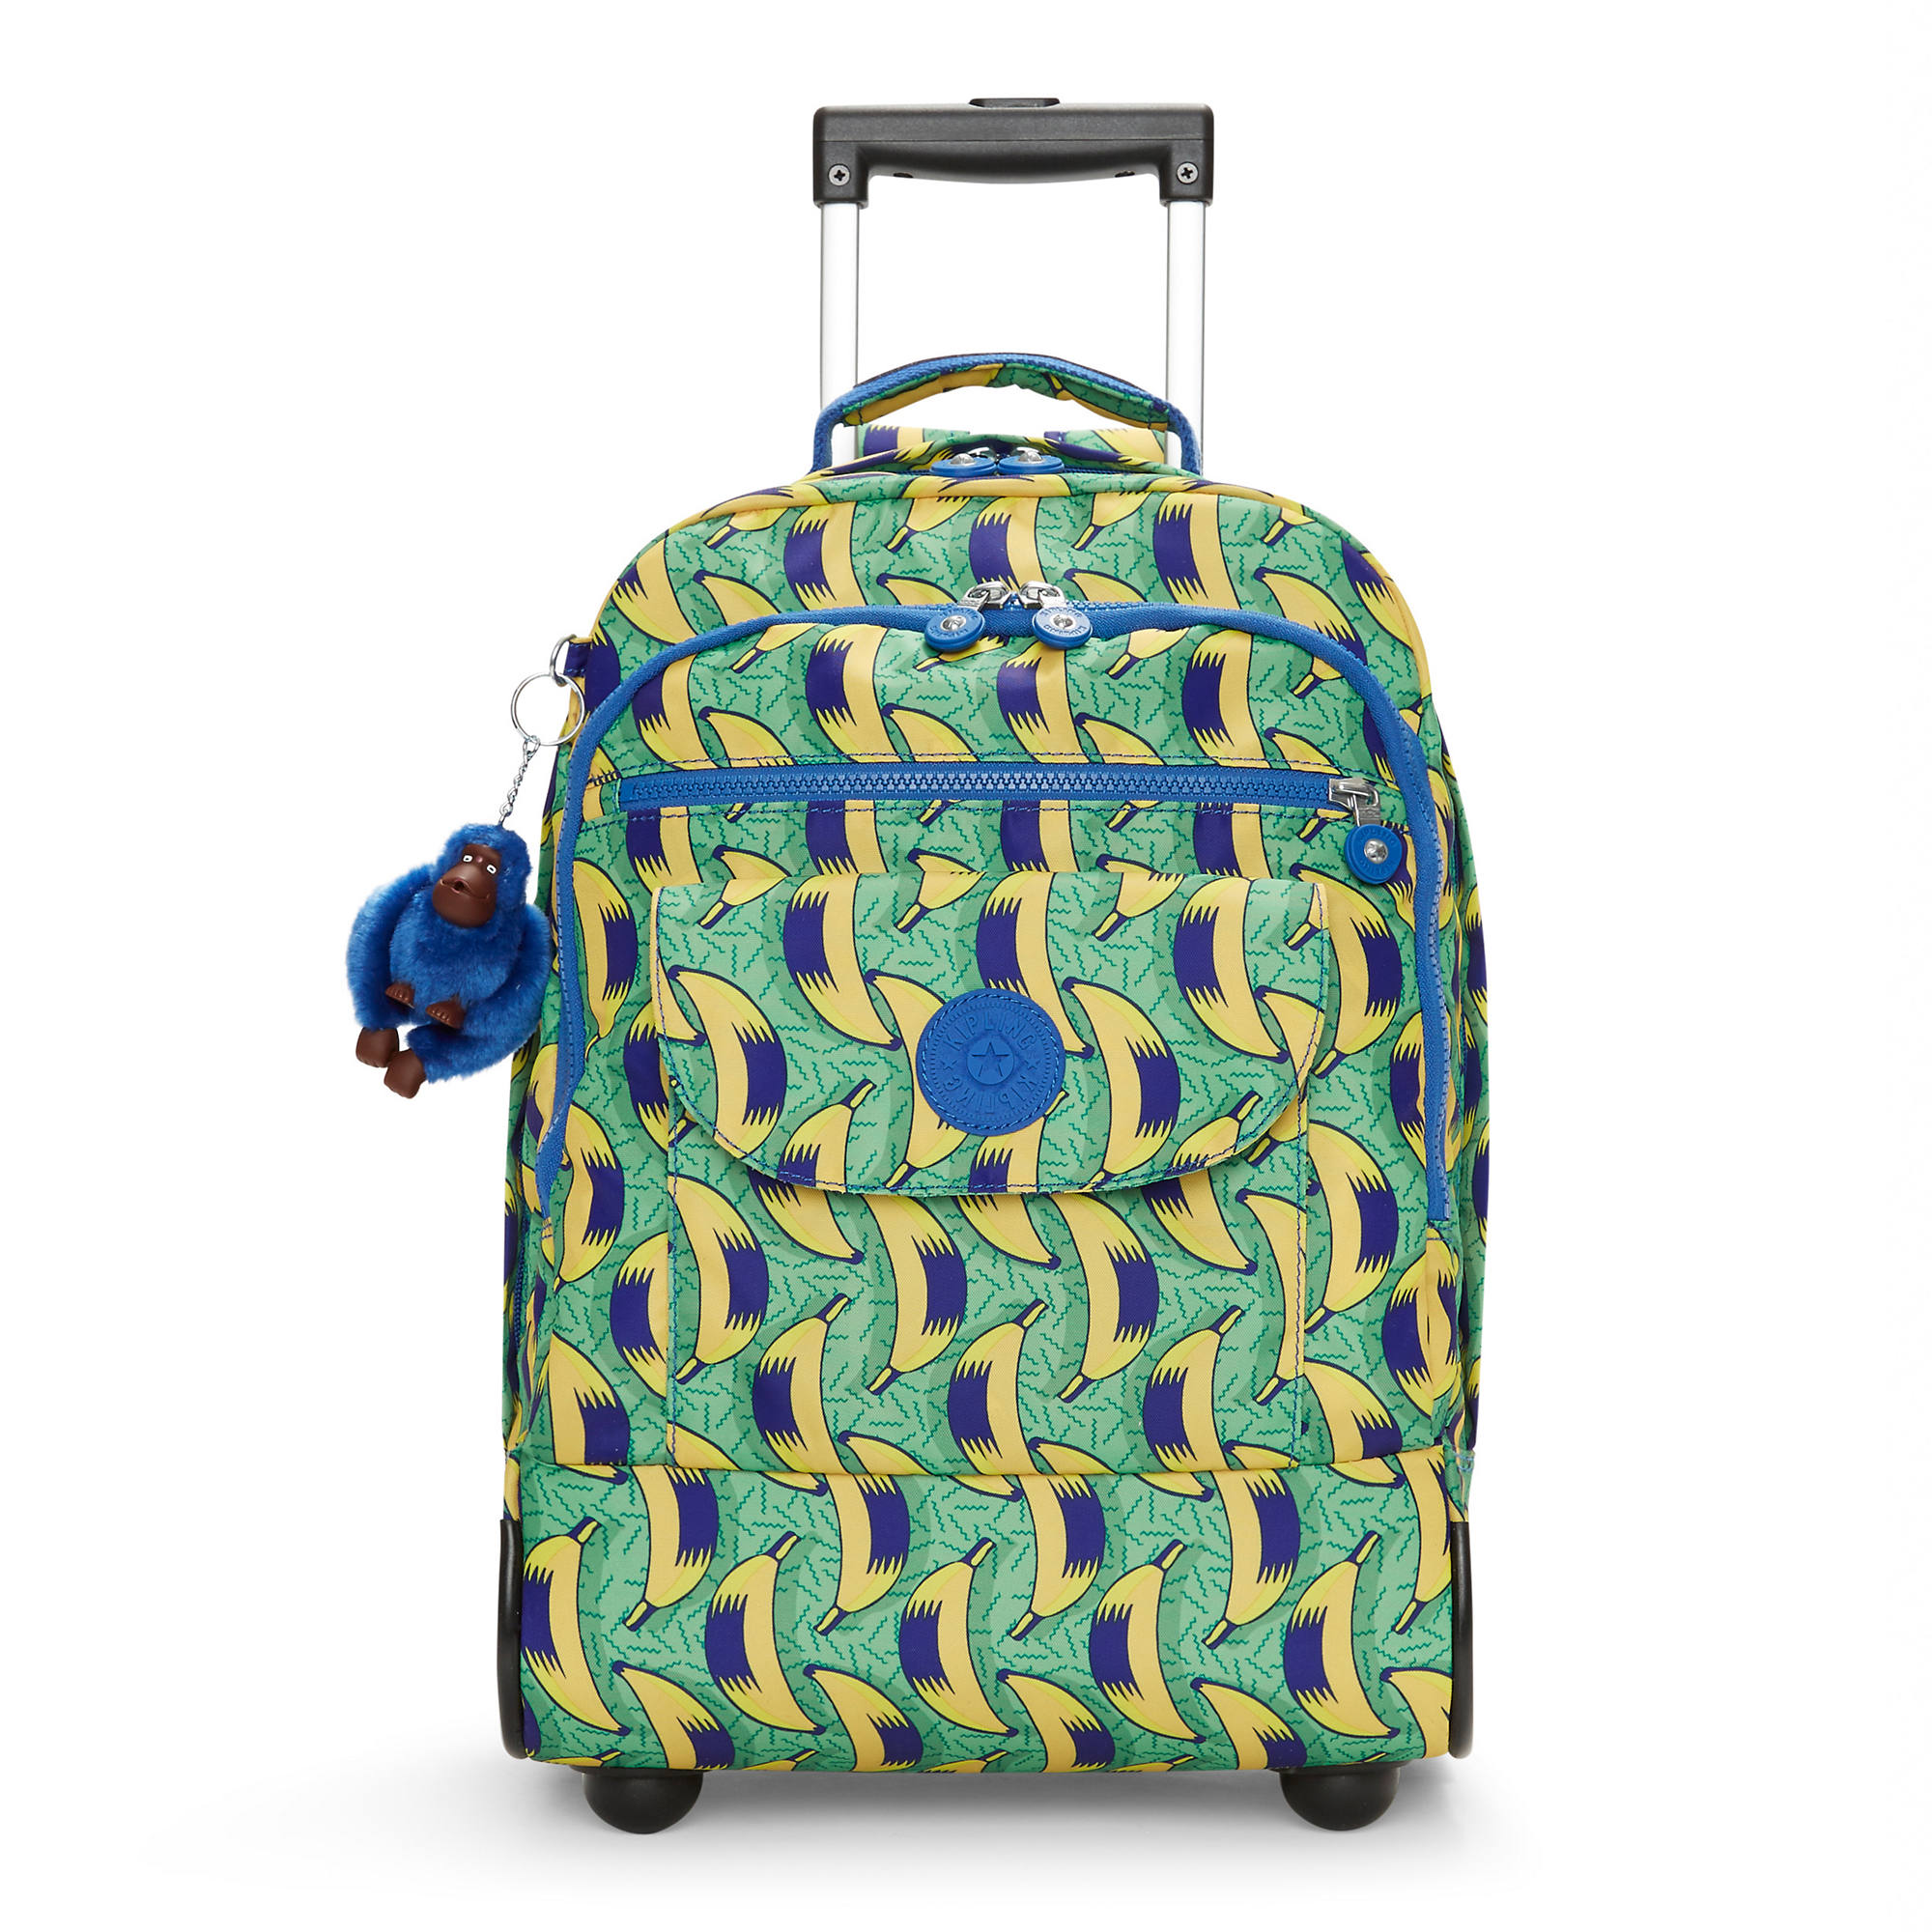 Kipling Sanaa Printed Rolling Backpack | eBay